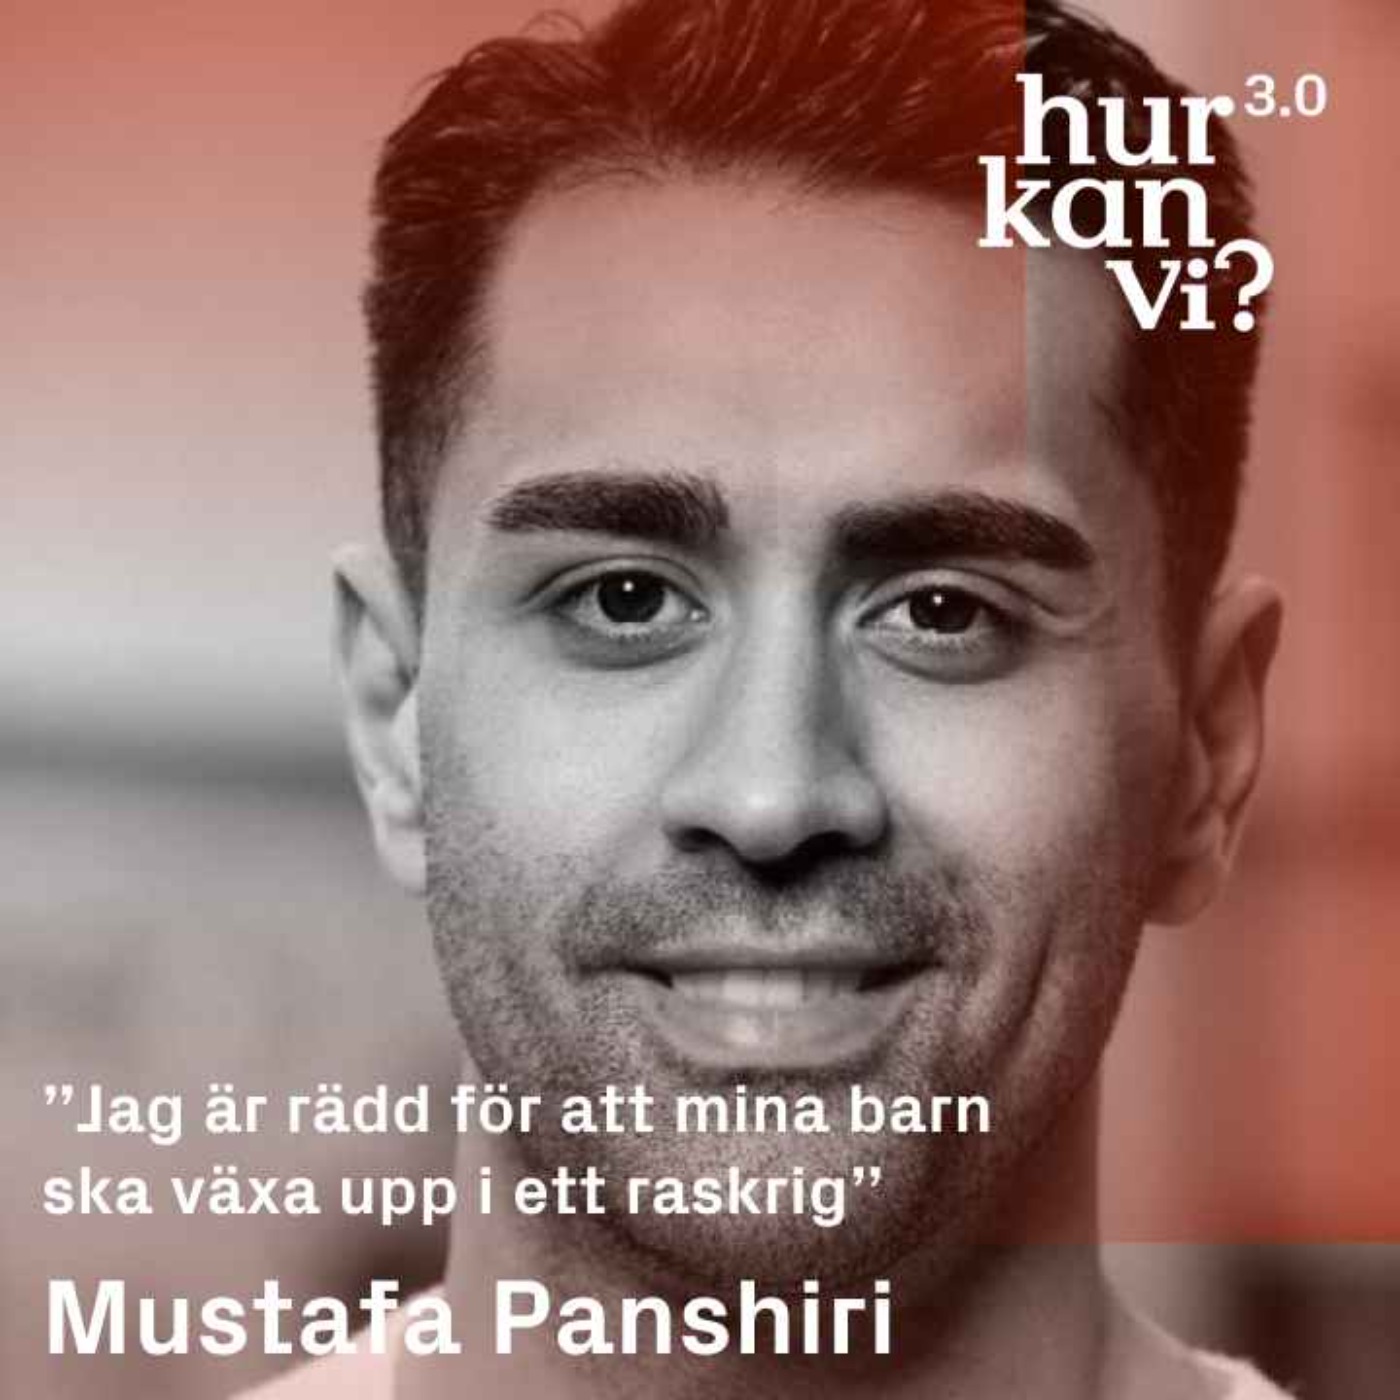 Mustafa Panshiri - ”Jag är rädd för att mina barn ska växa upp i ett raskrig”